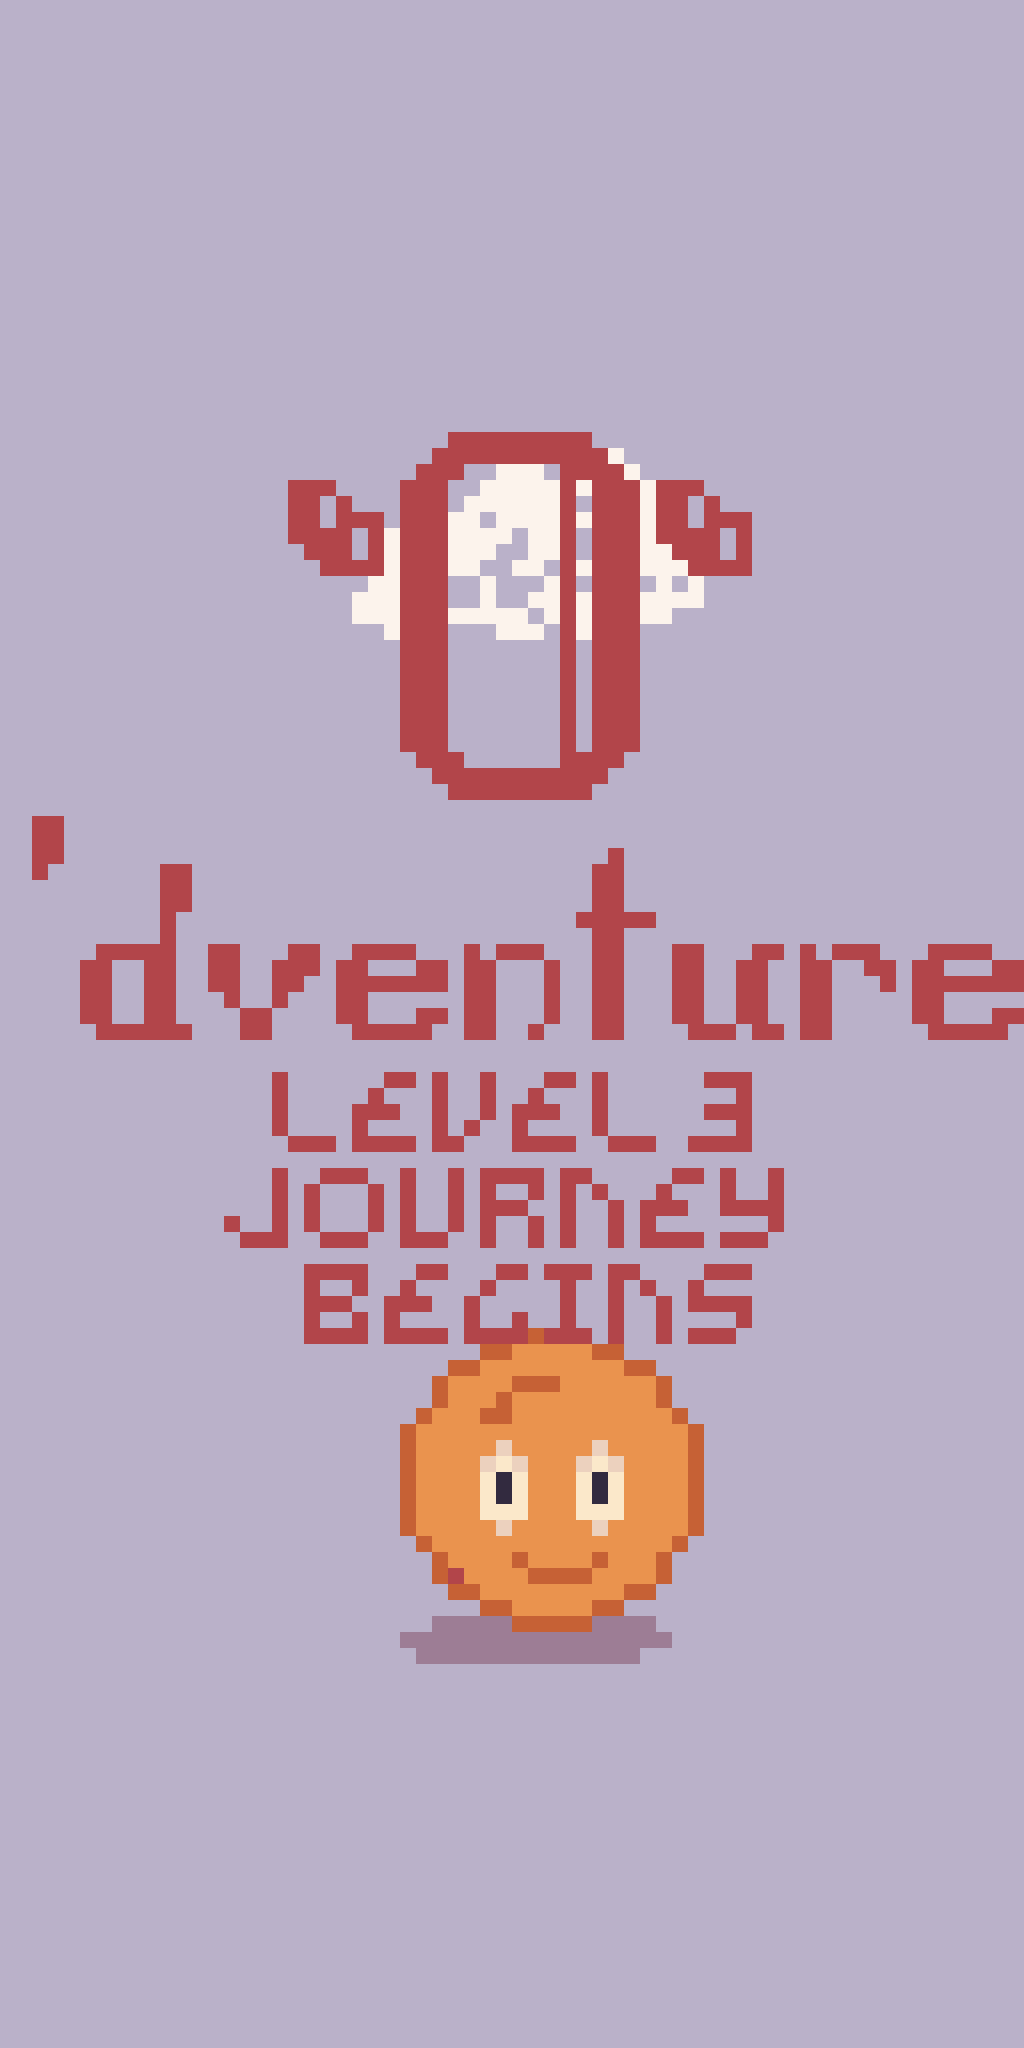 O’dventure Level 3: Journey Begins